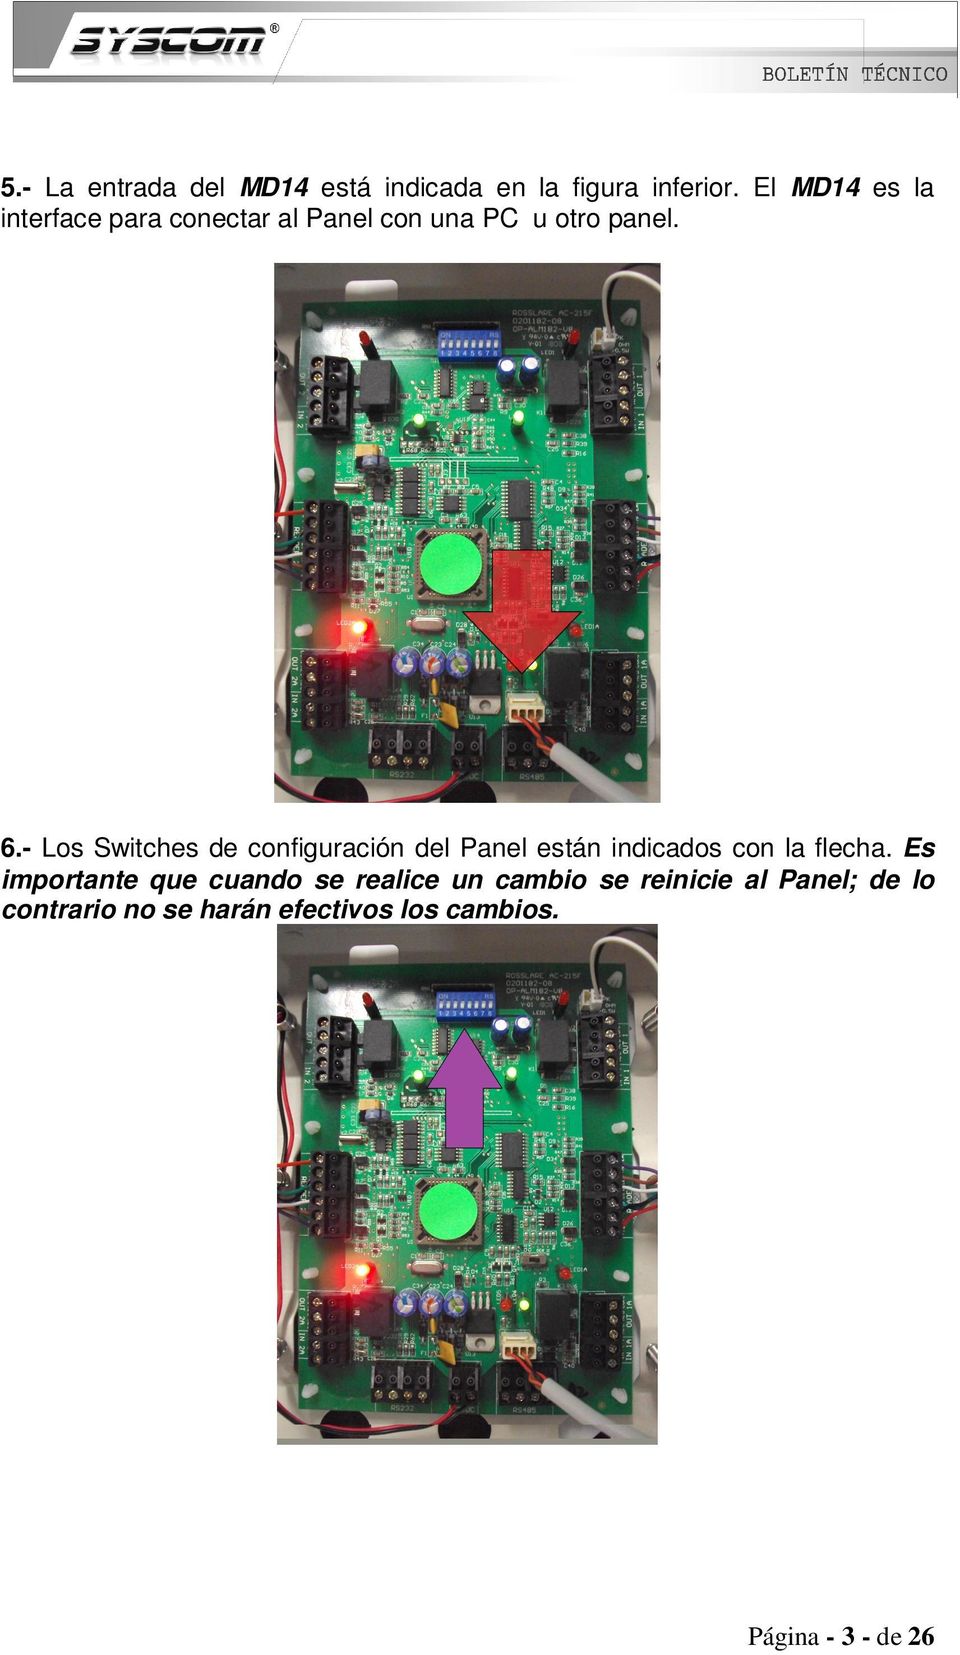 - Los Switches de configuración del Panel están indicados con la flecha.